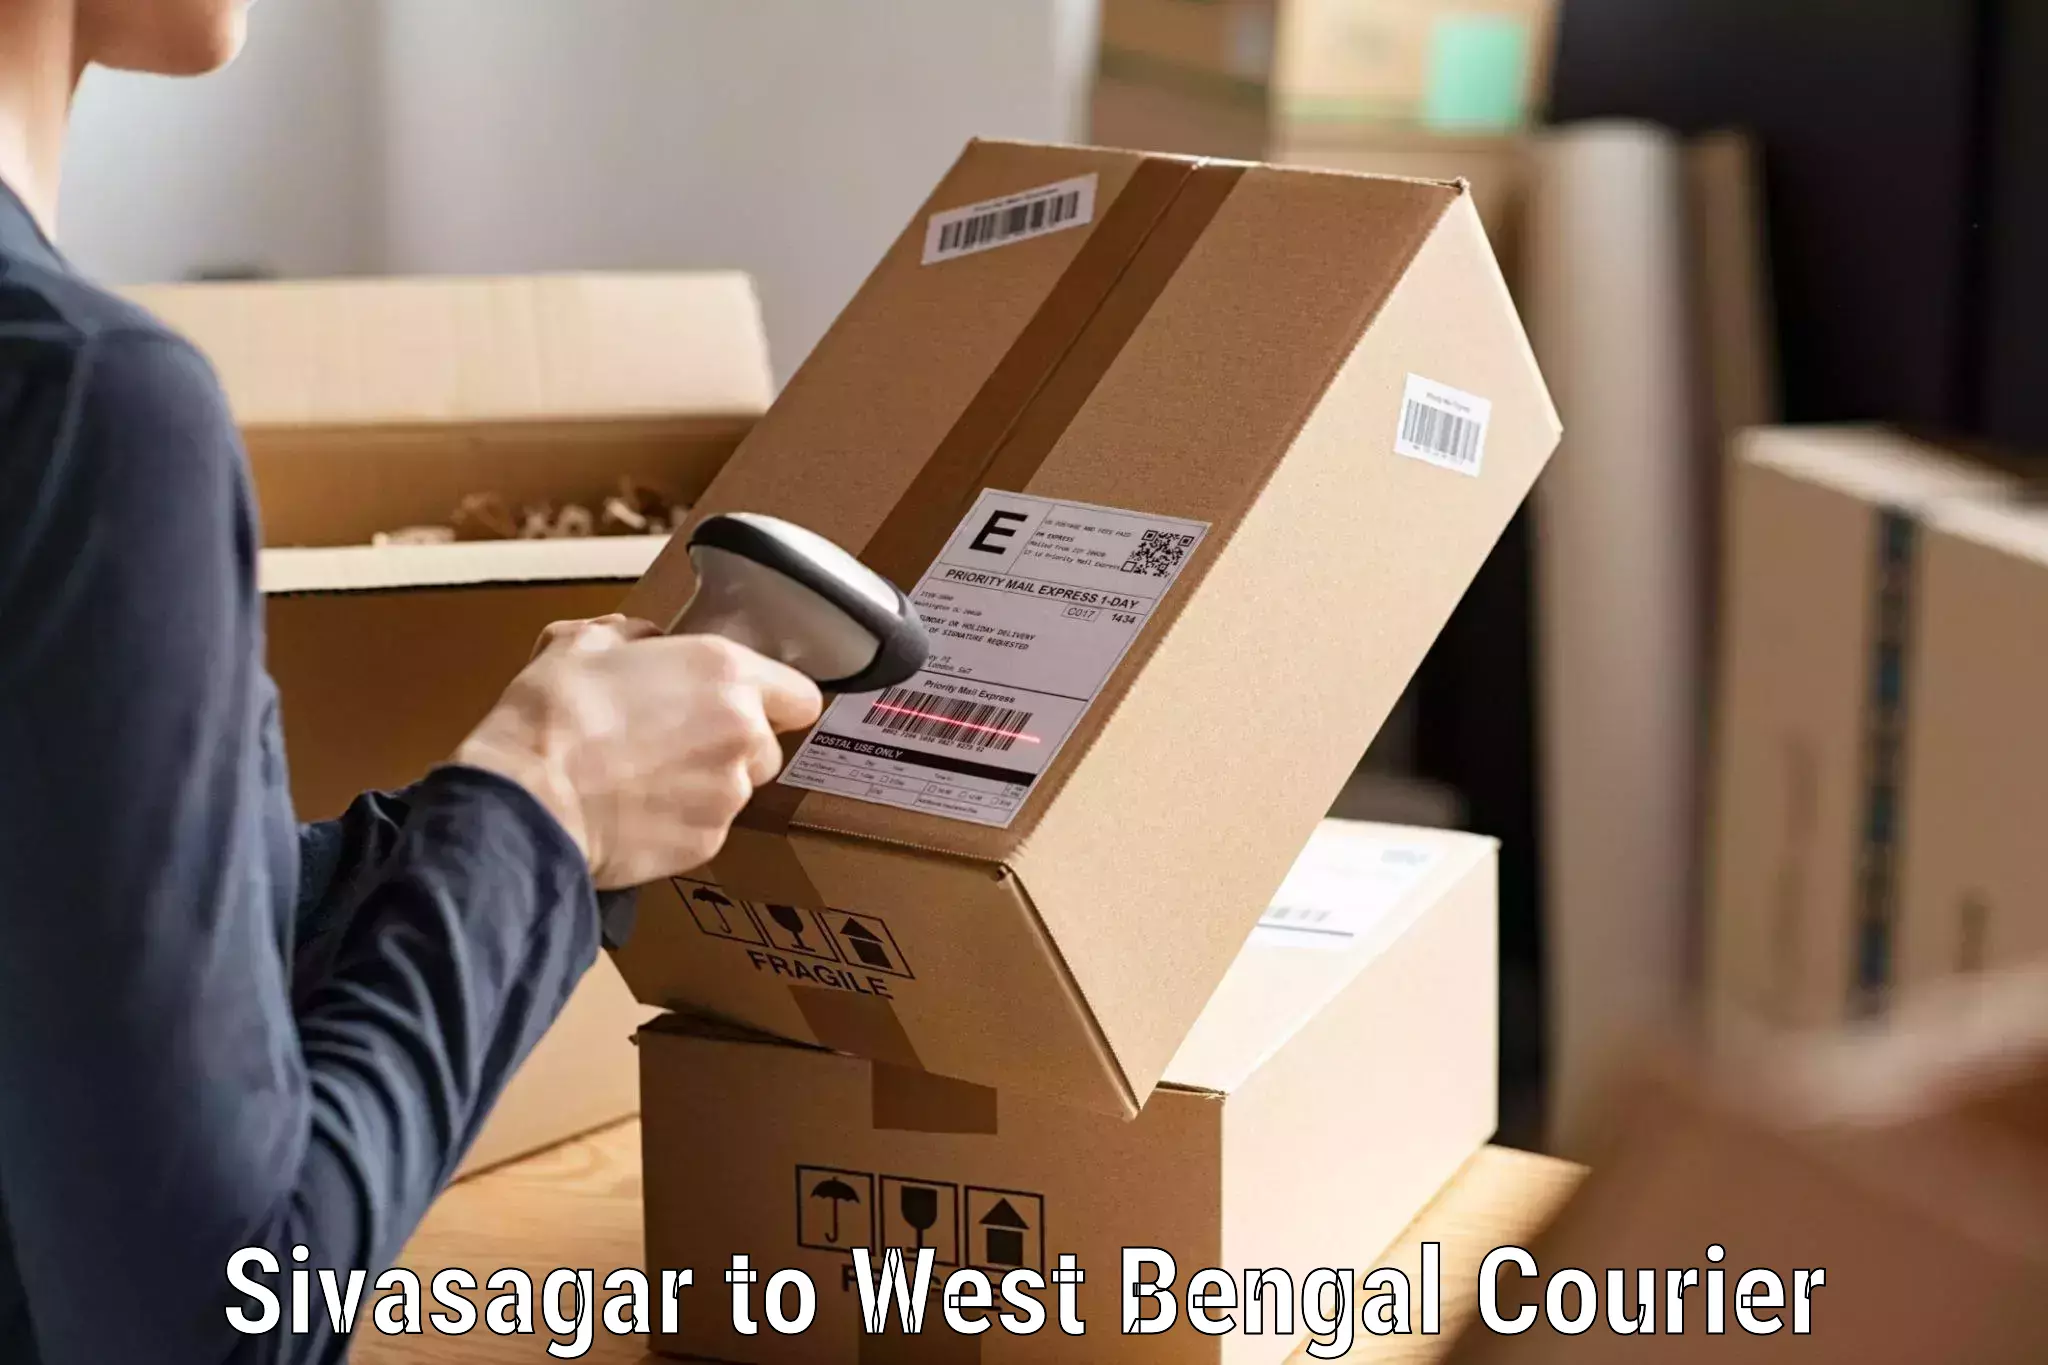 Ocean freight courier Sivasagar to NIT Shibpur